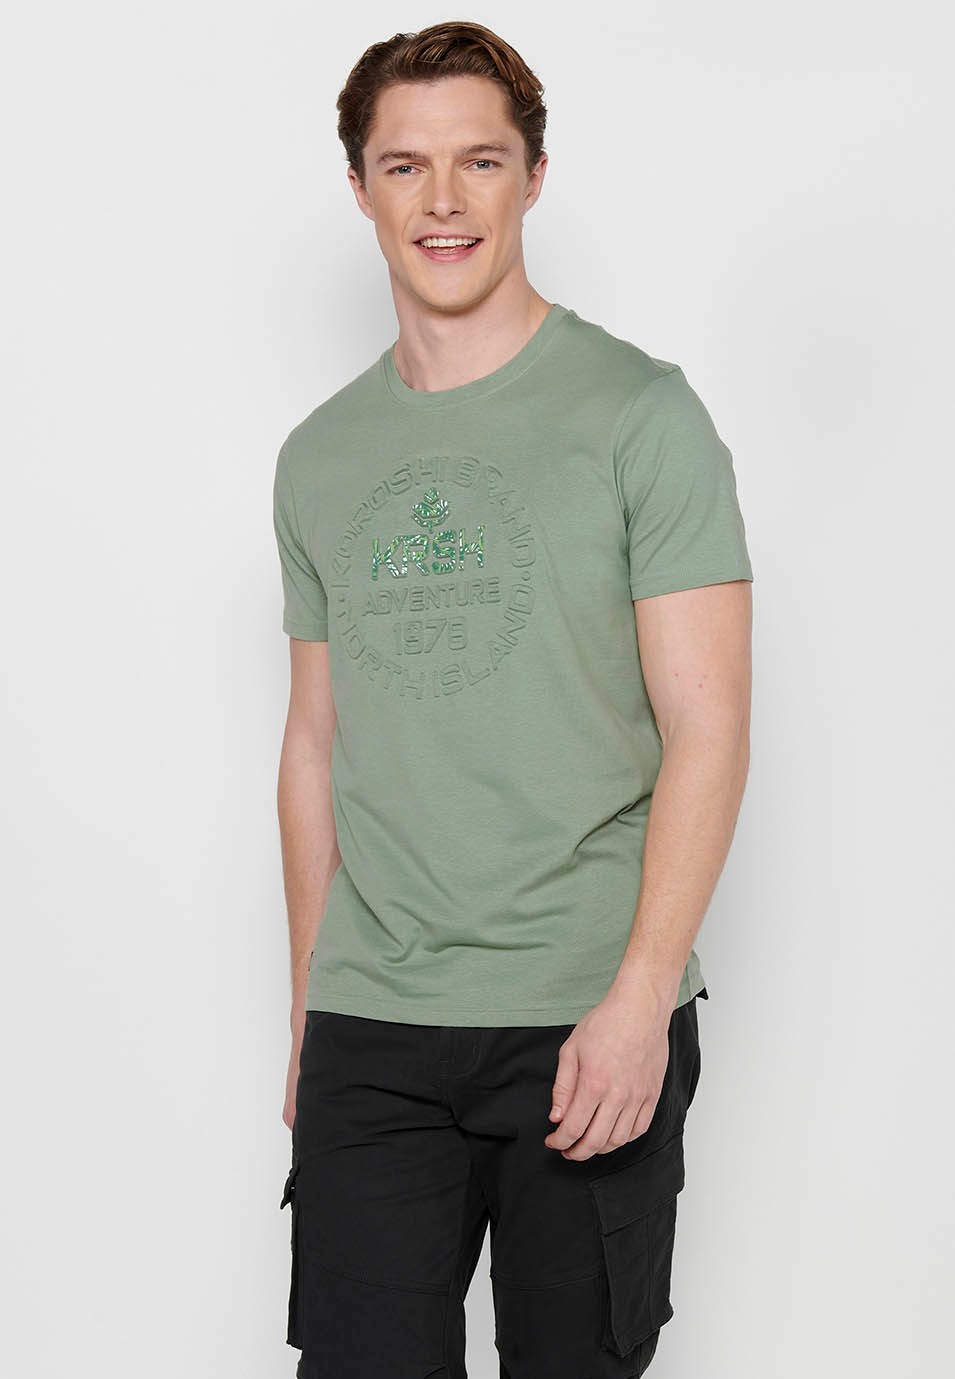 Men's Khaki Color Round Neck Cotton Short Sleeve T-shirt 7